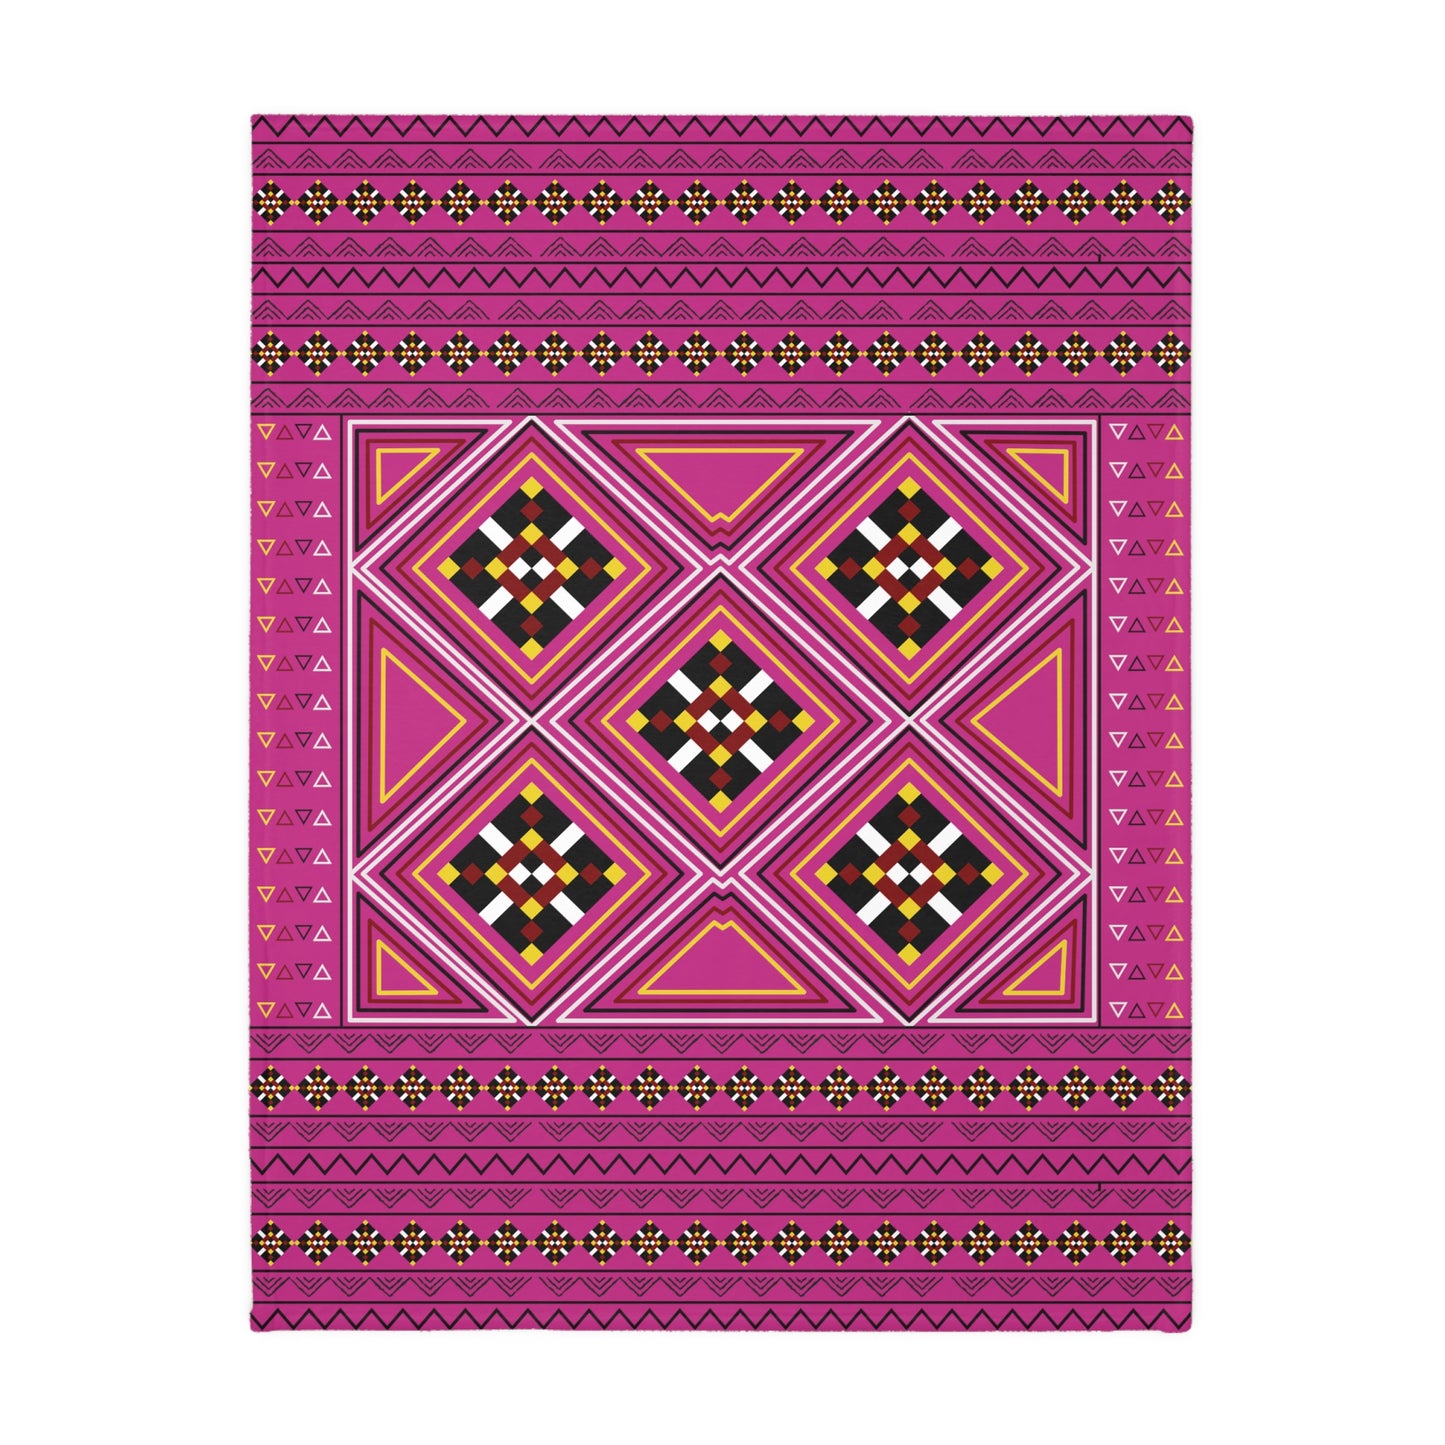 Pink Velveteen Microfiber Blanket (Two-sided print)